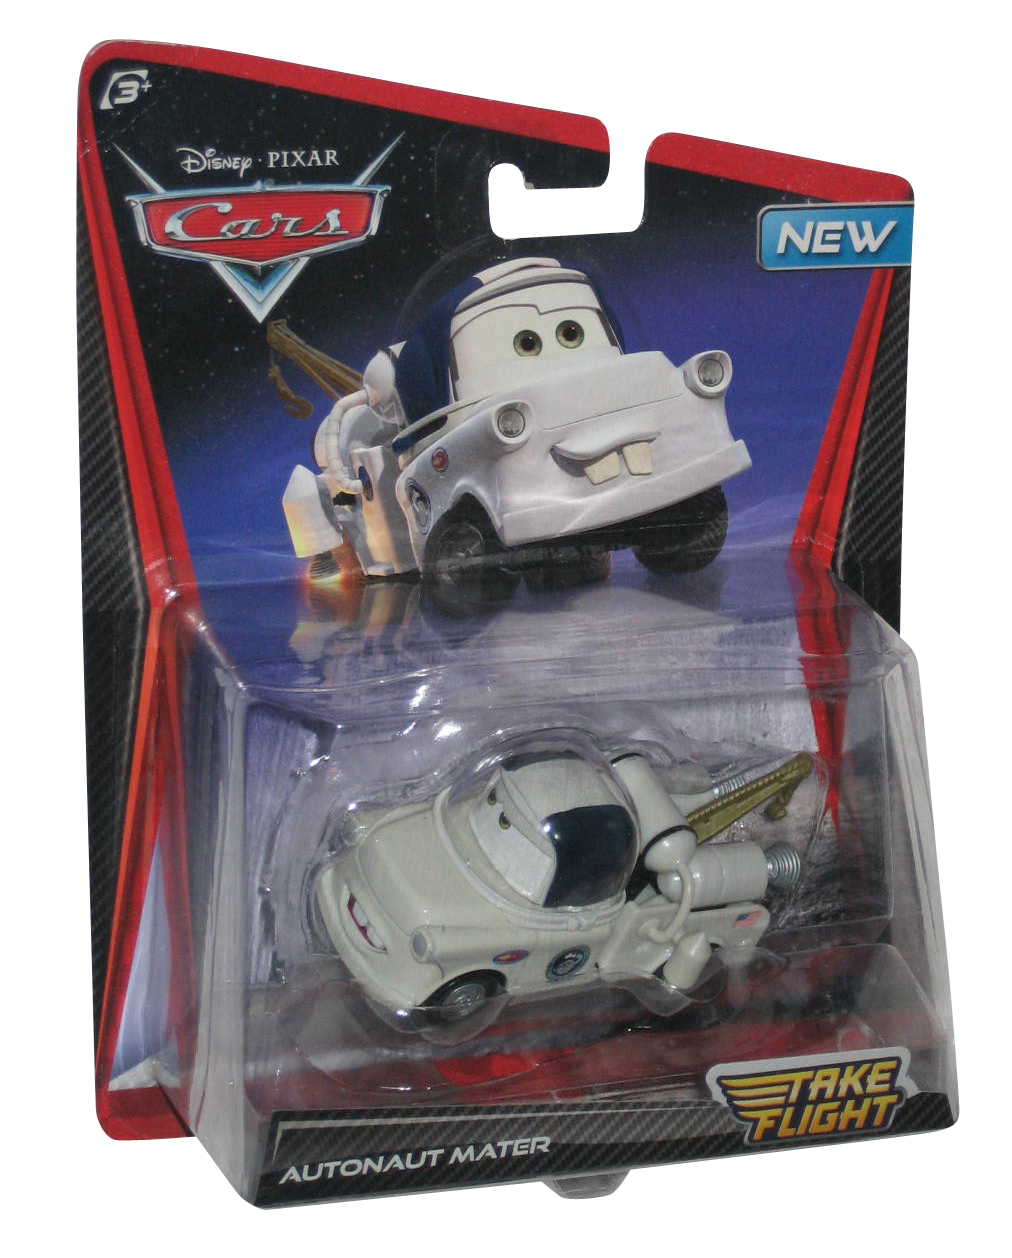 Disney Pixar Cars Autonaut Mater Take Flight Toy Car